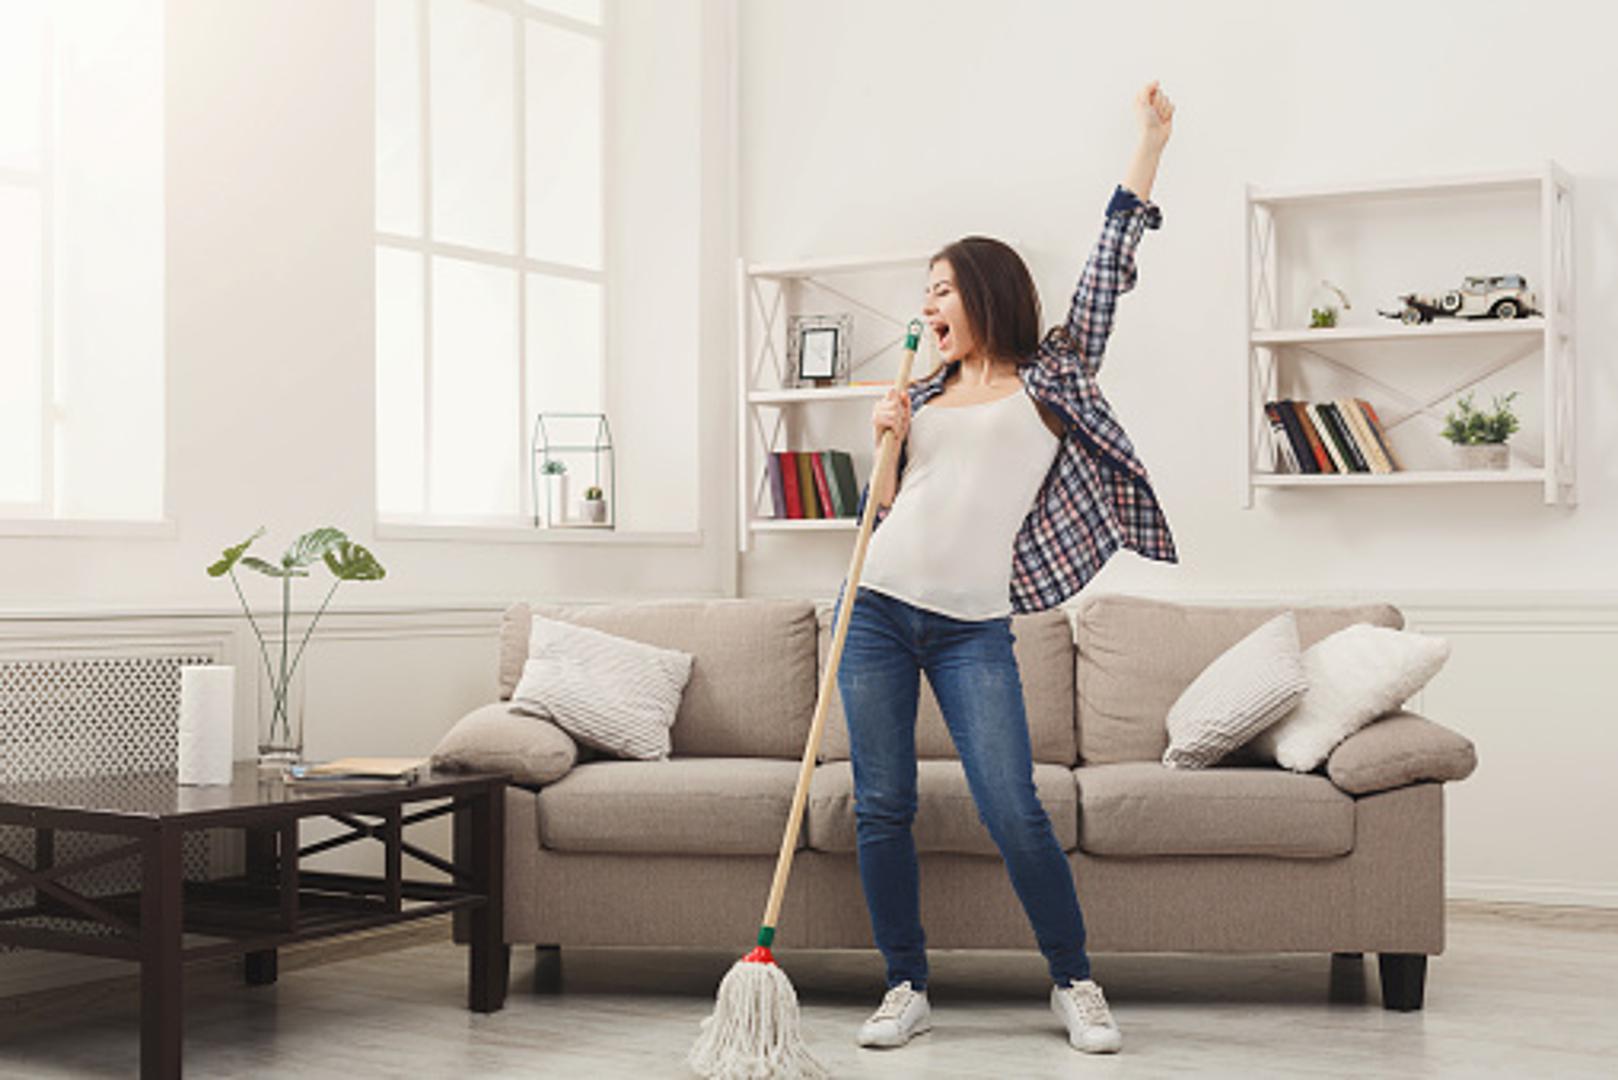 Nedavno smo pisali o tome kako jednostavnije i bez napora možete očistiti svoj dom, no sada donosimo najčešće pogreške pri čišćenju koje mogu napraviti više štete nego koristi. 